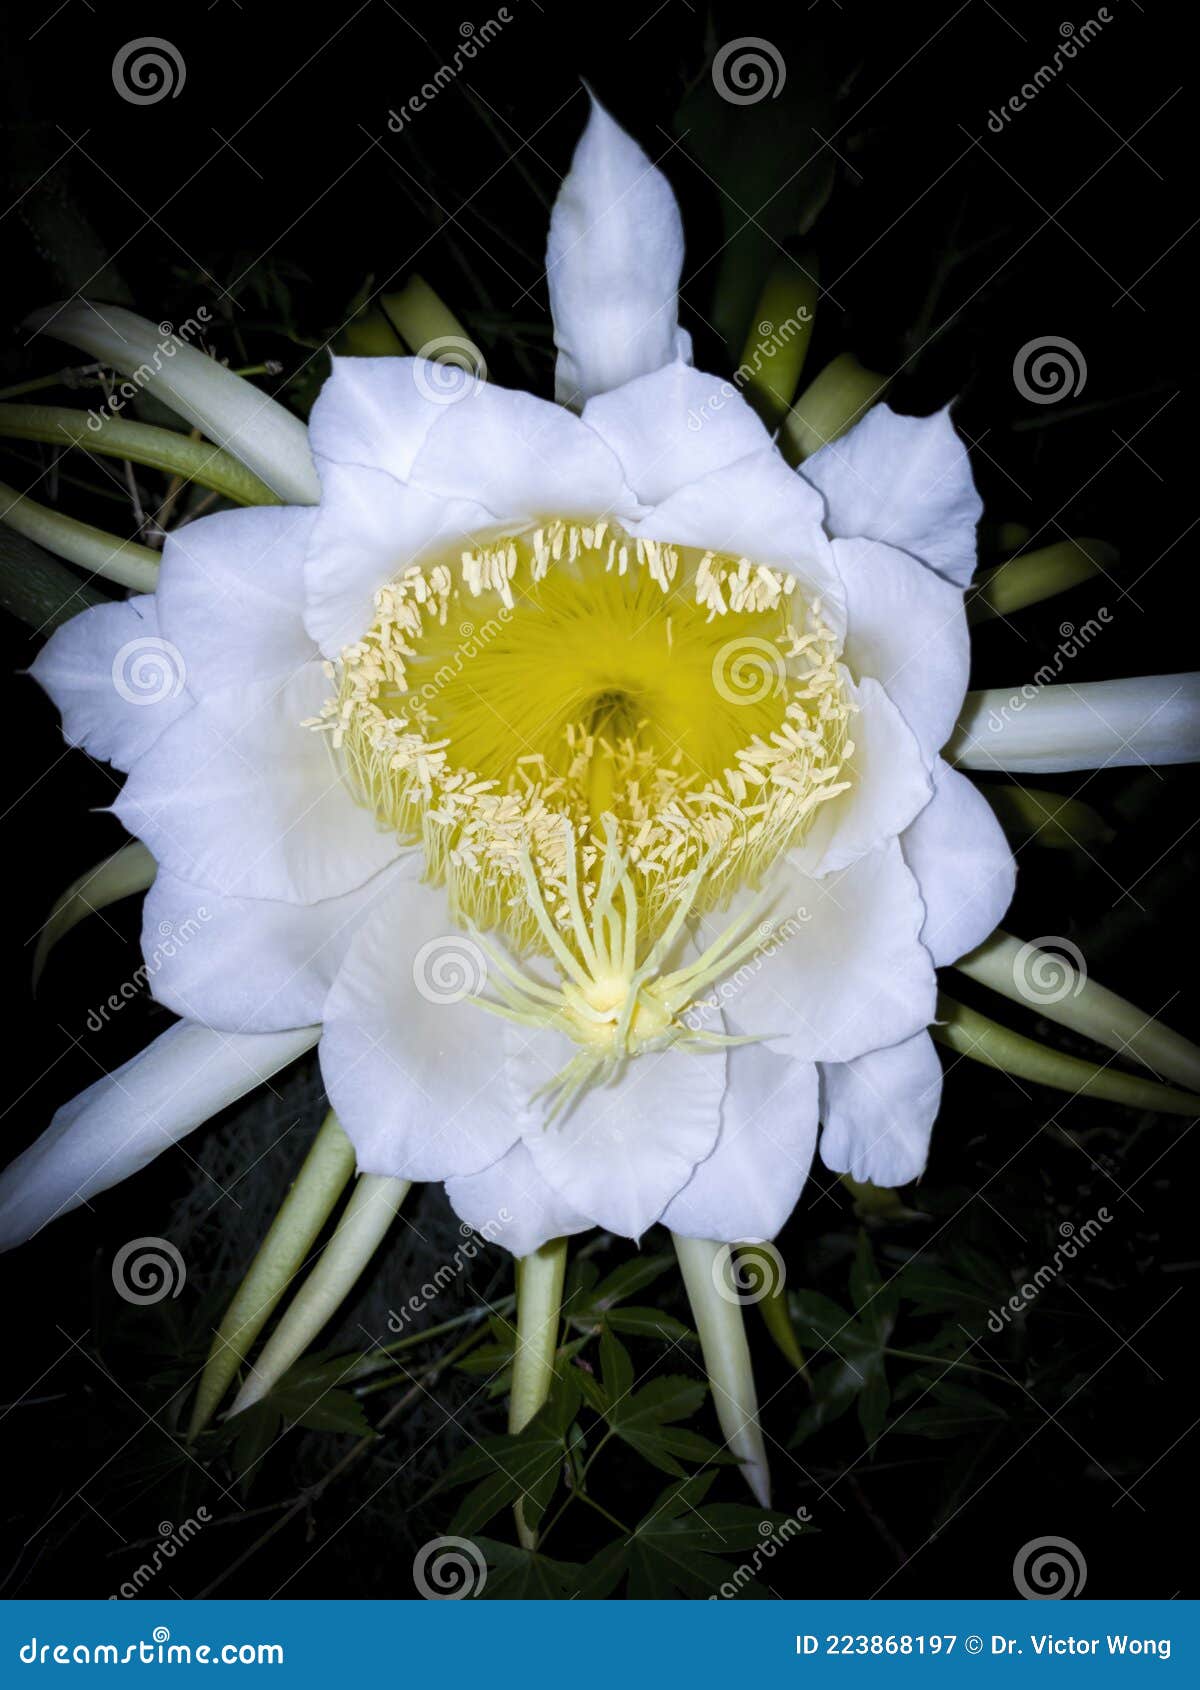 Dame De La Fleur De Nuit En Fleurs Image stock - Image du botanique, frais:  223868197